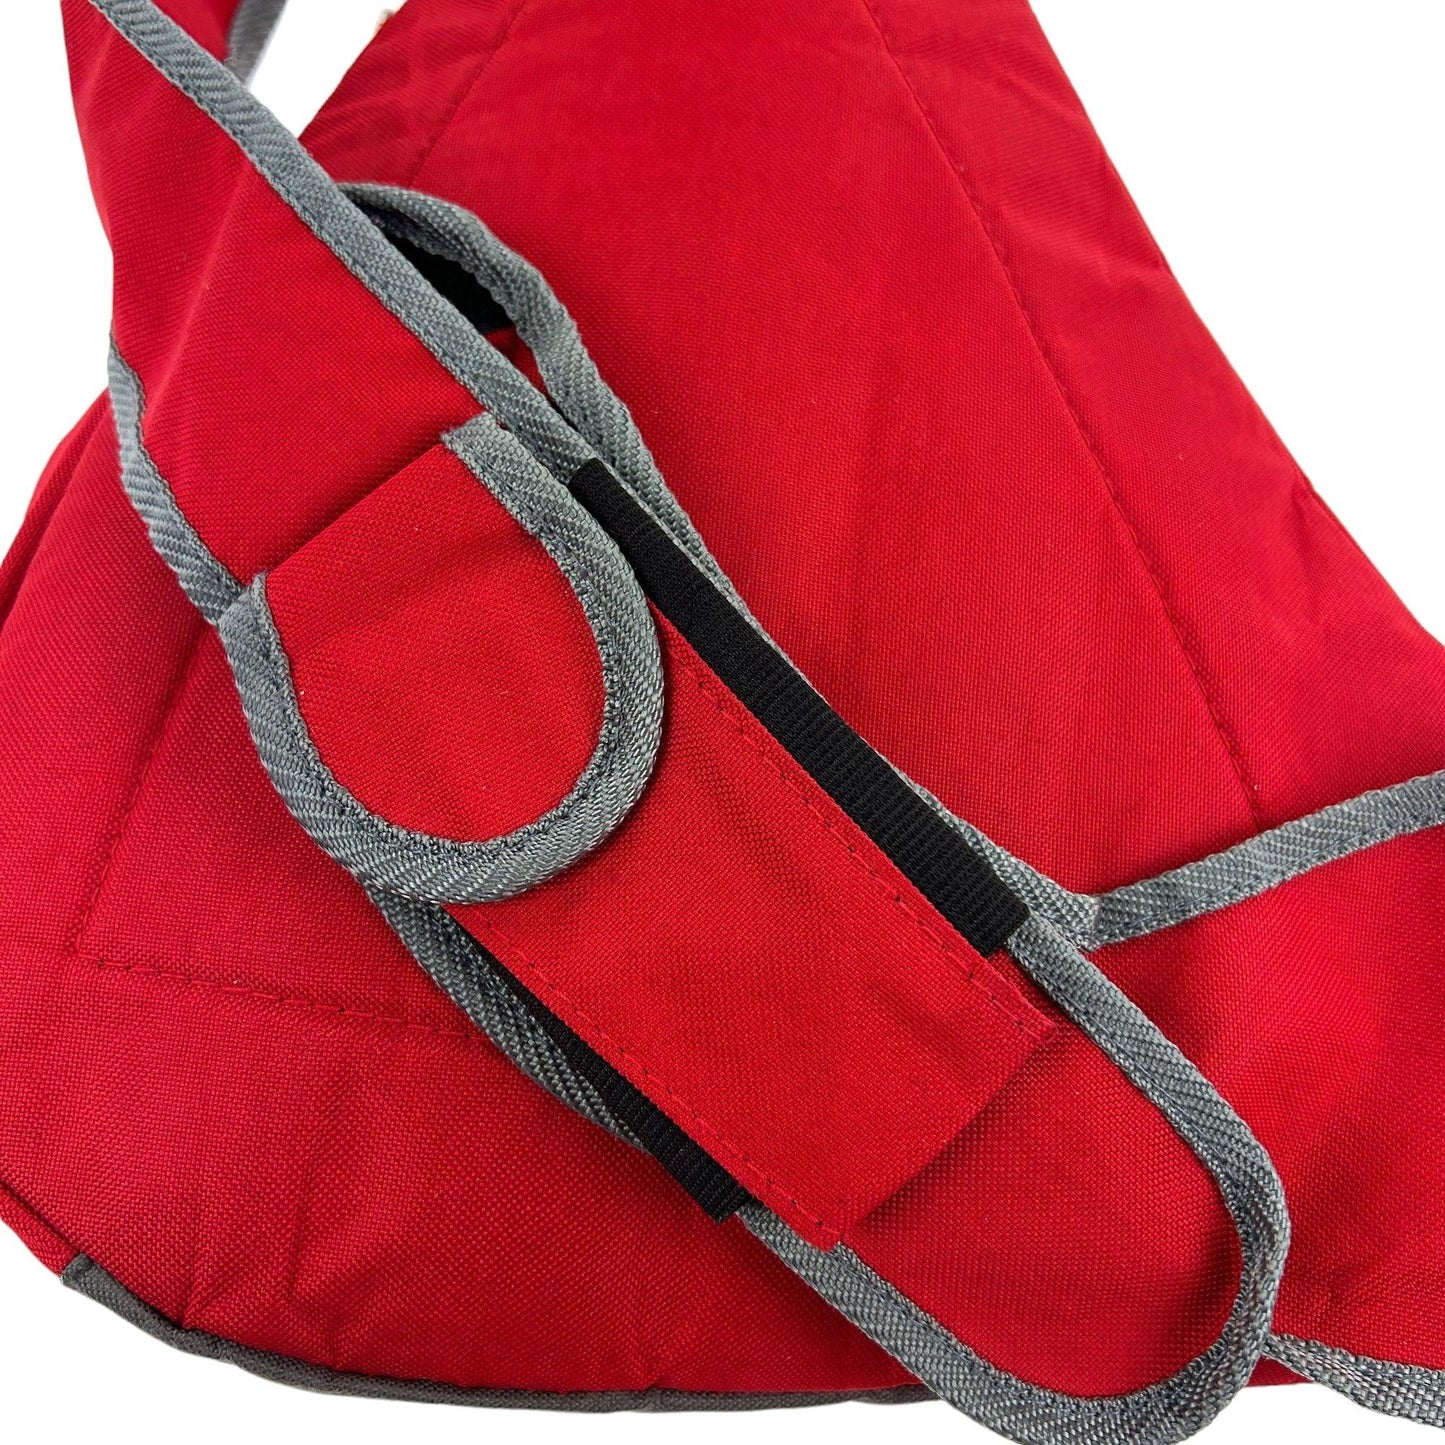 Vintage Pocket Sling Bag - Known Source